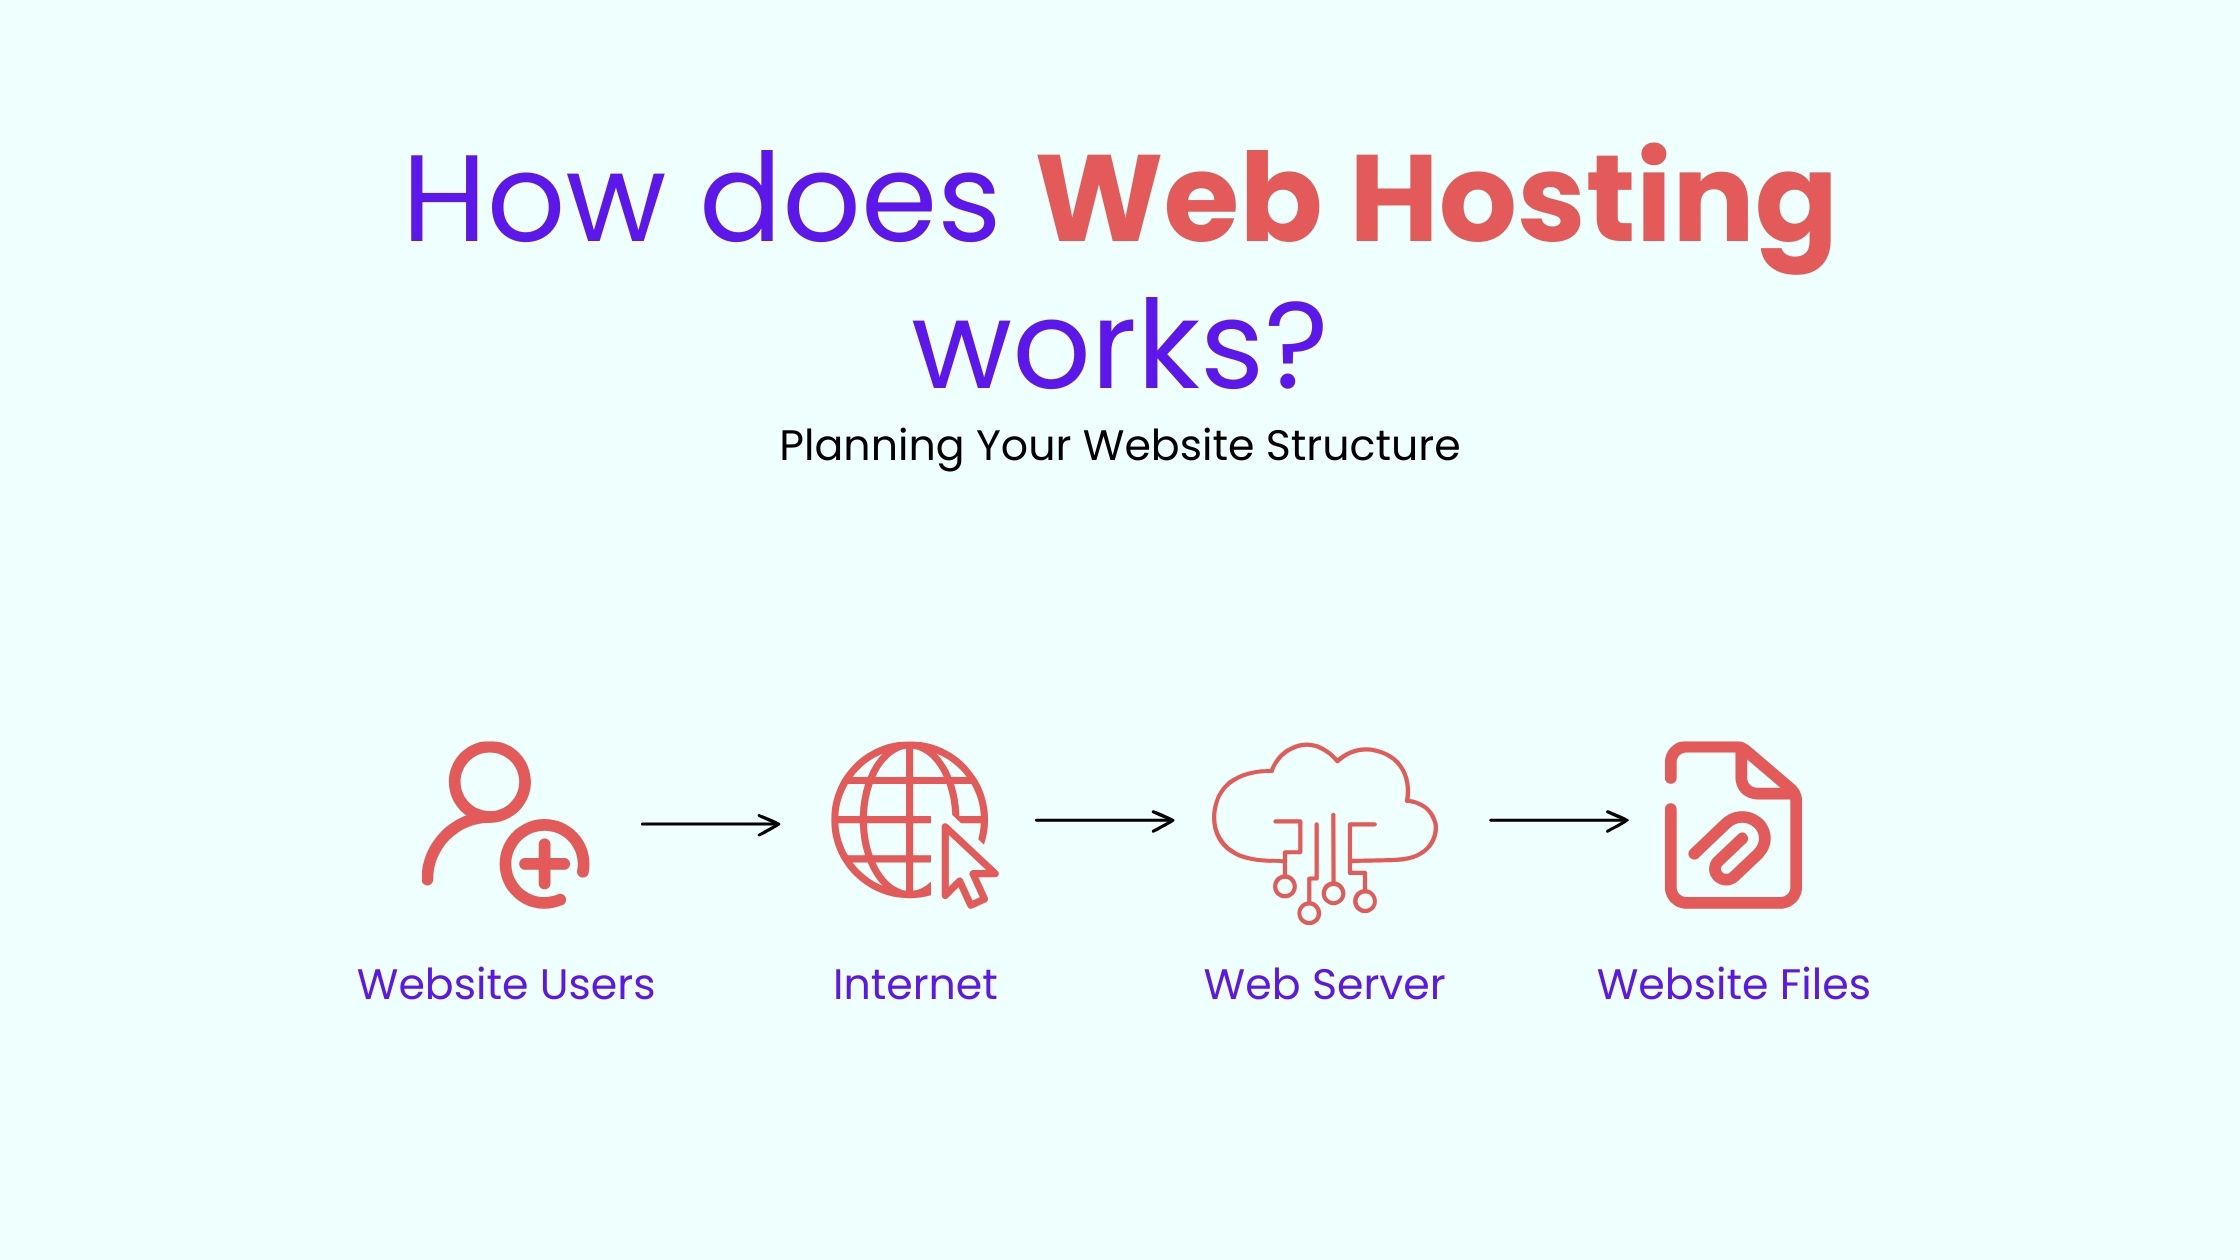 Hosting Your Website